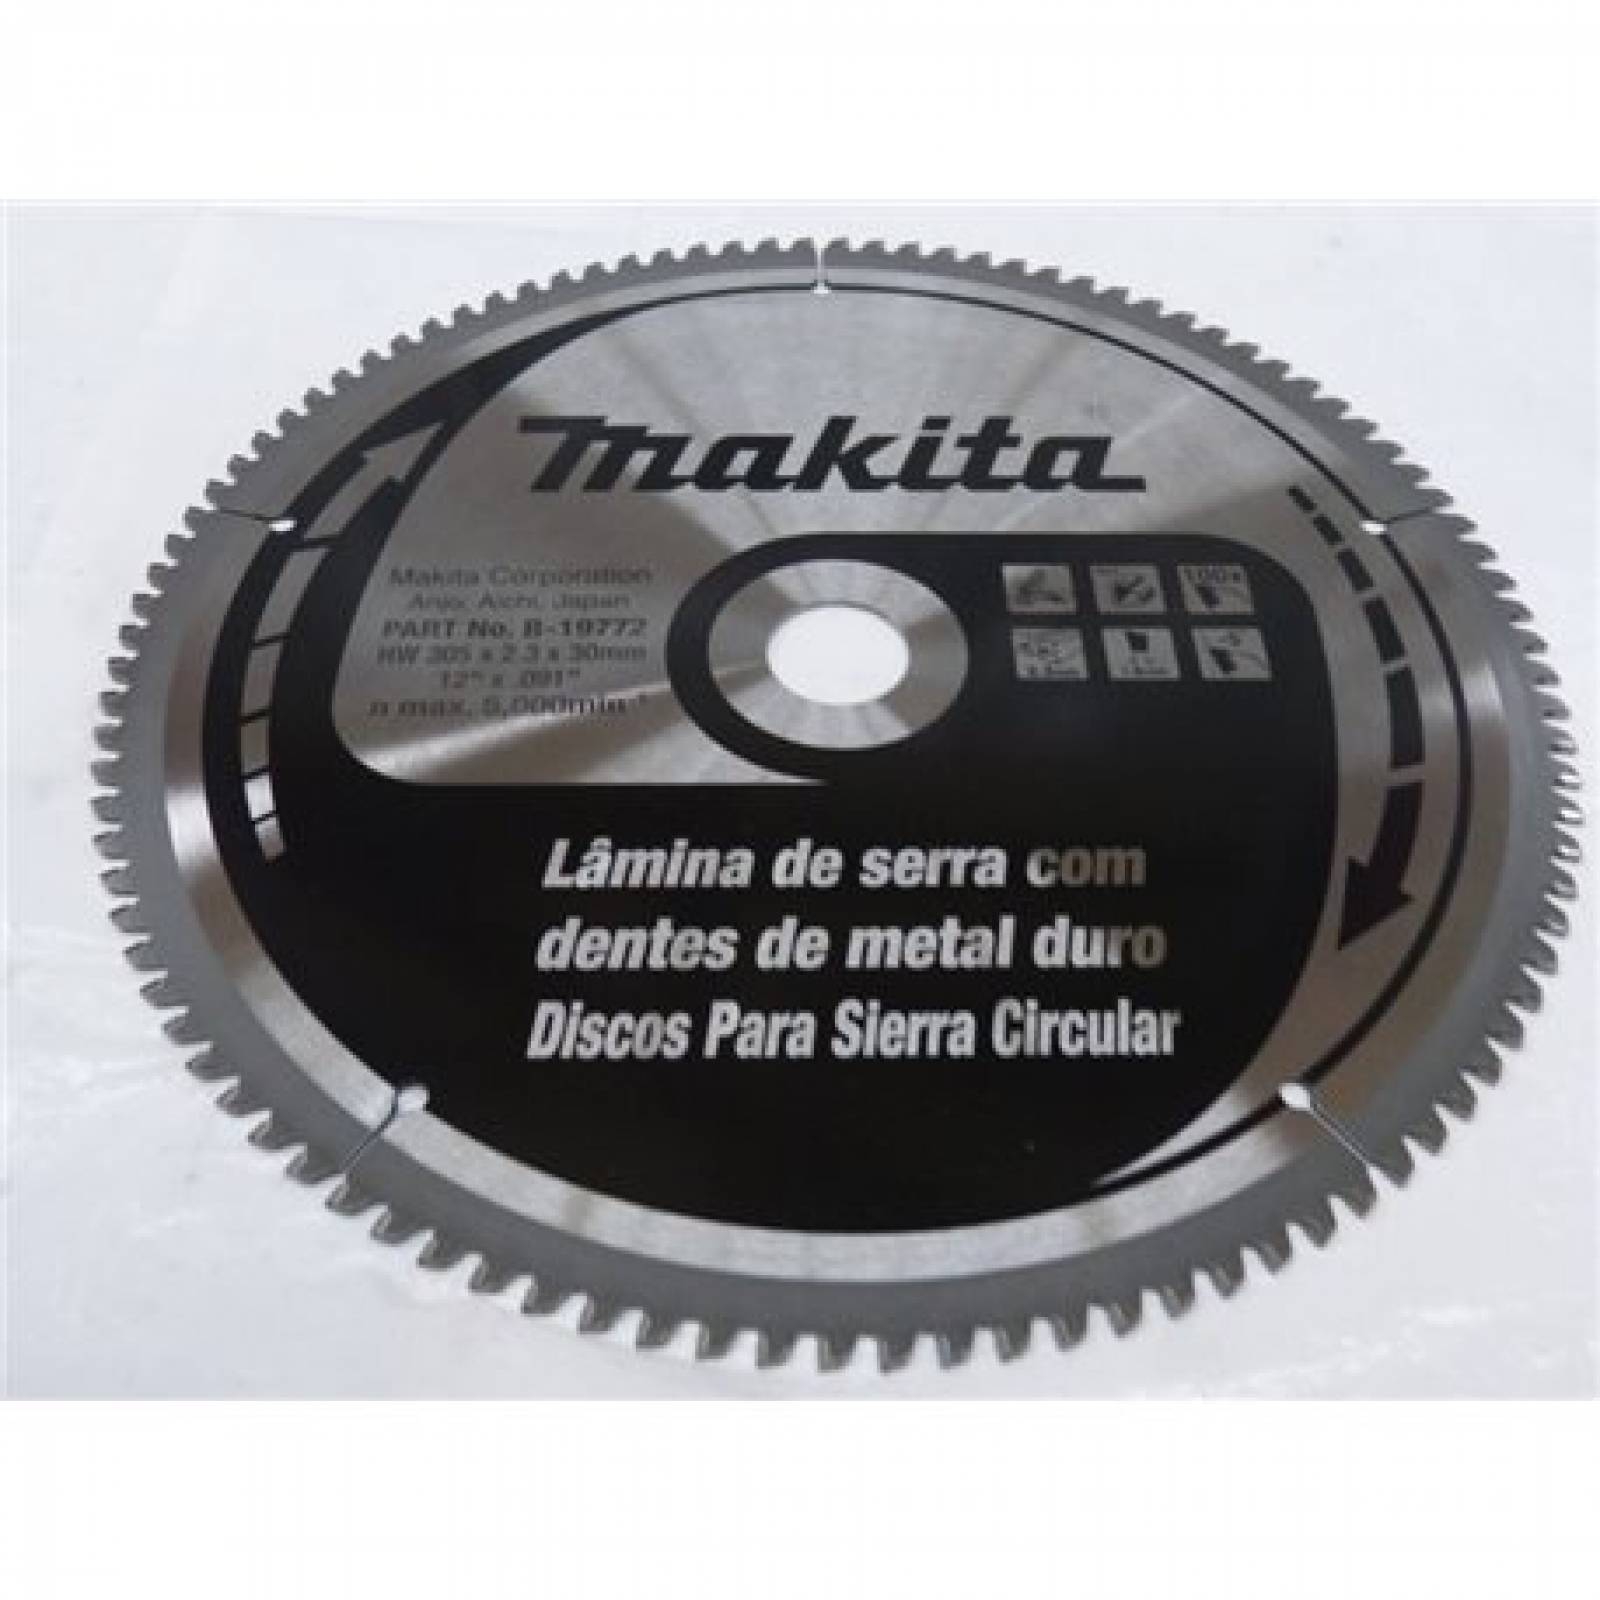 Disco Sierra Circular Aluminio 12 Makita B19772